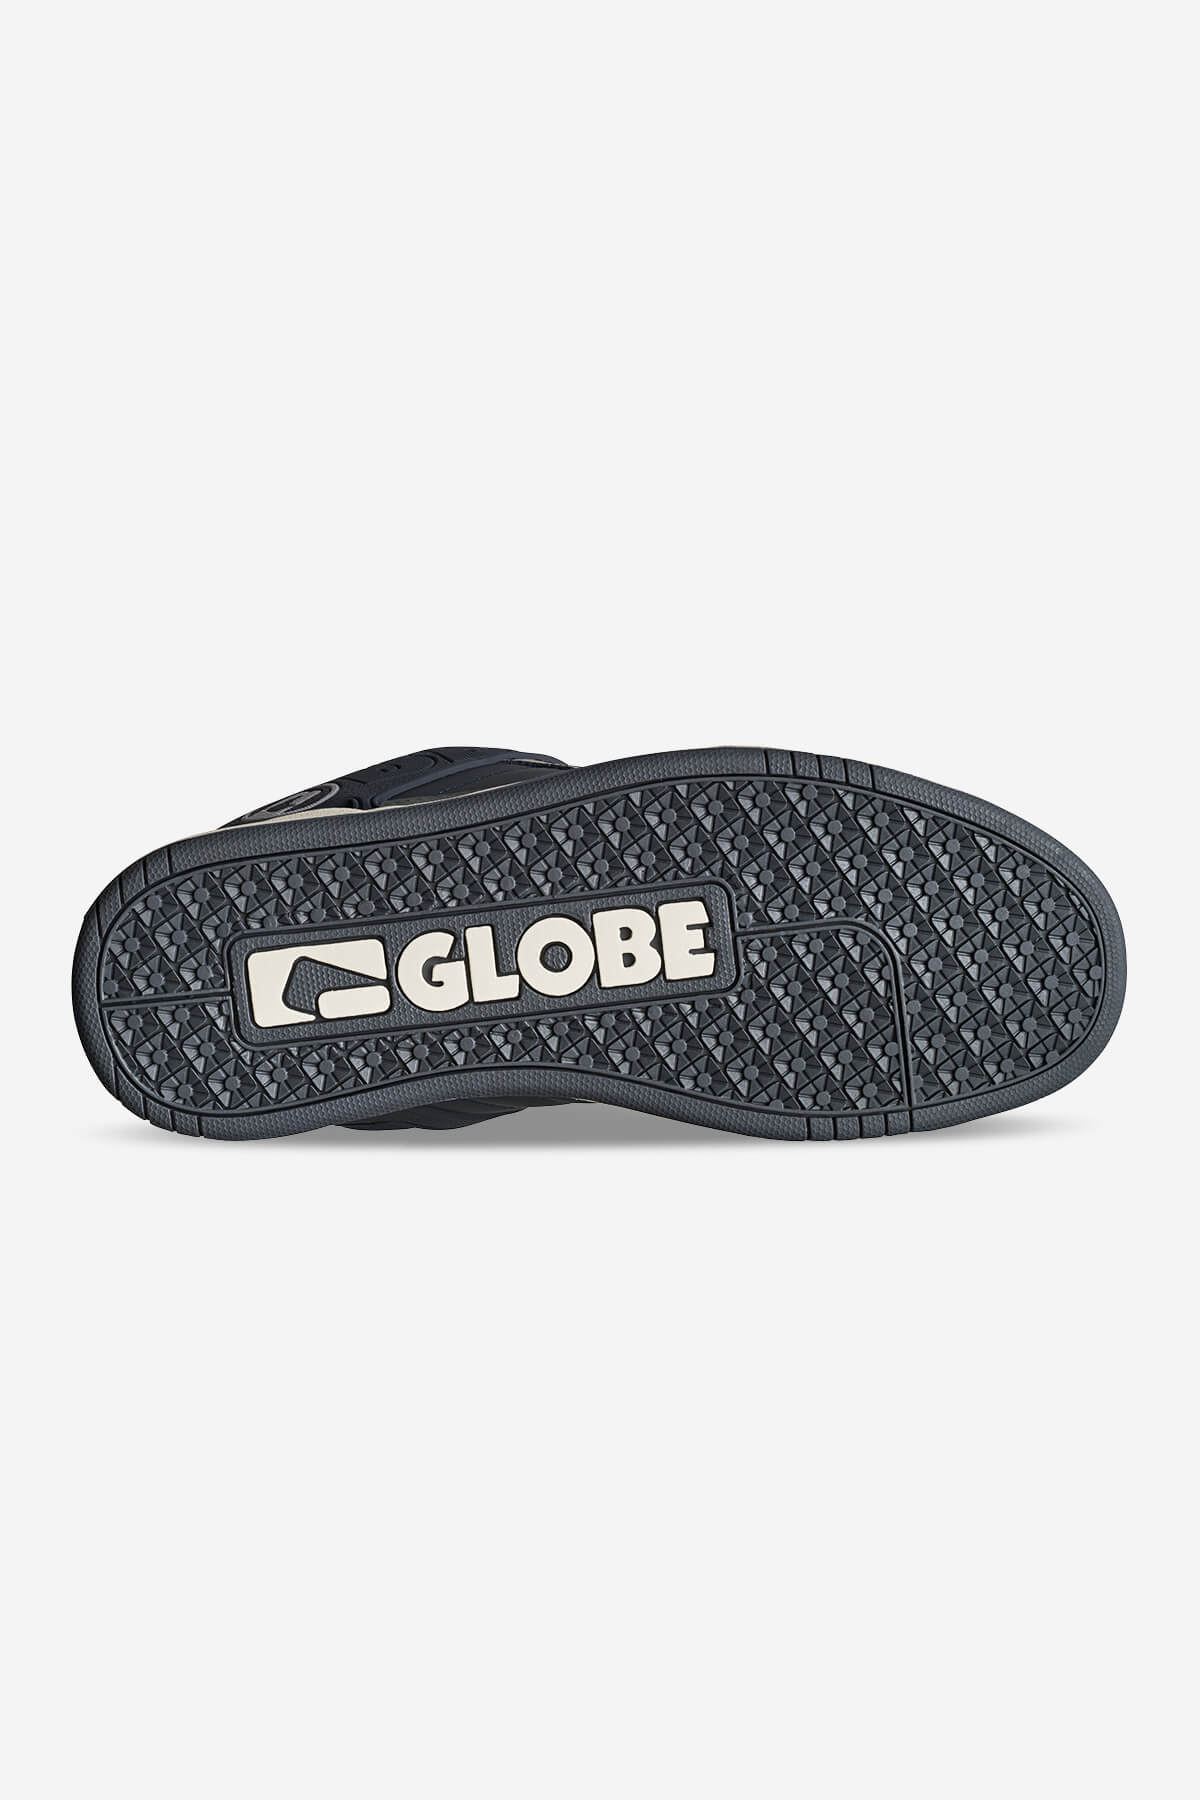 Globe FOOTWEAR [SELECT SERIES] Tilt - Ebony/Charcoal in Ebony/Charcoal